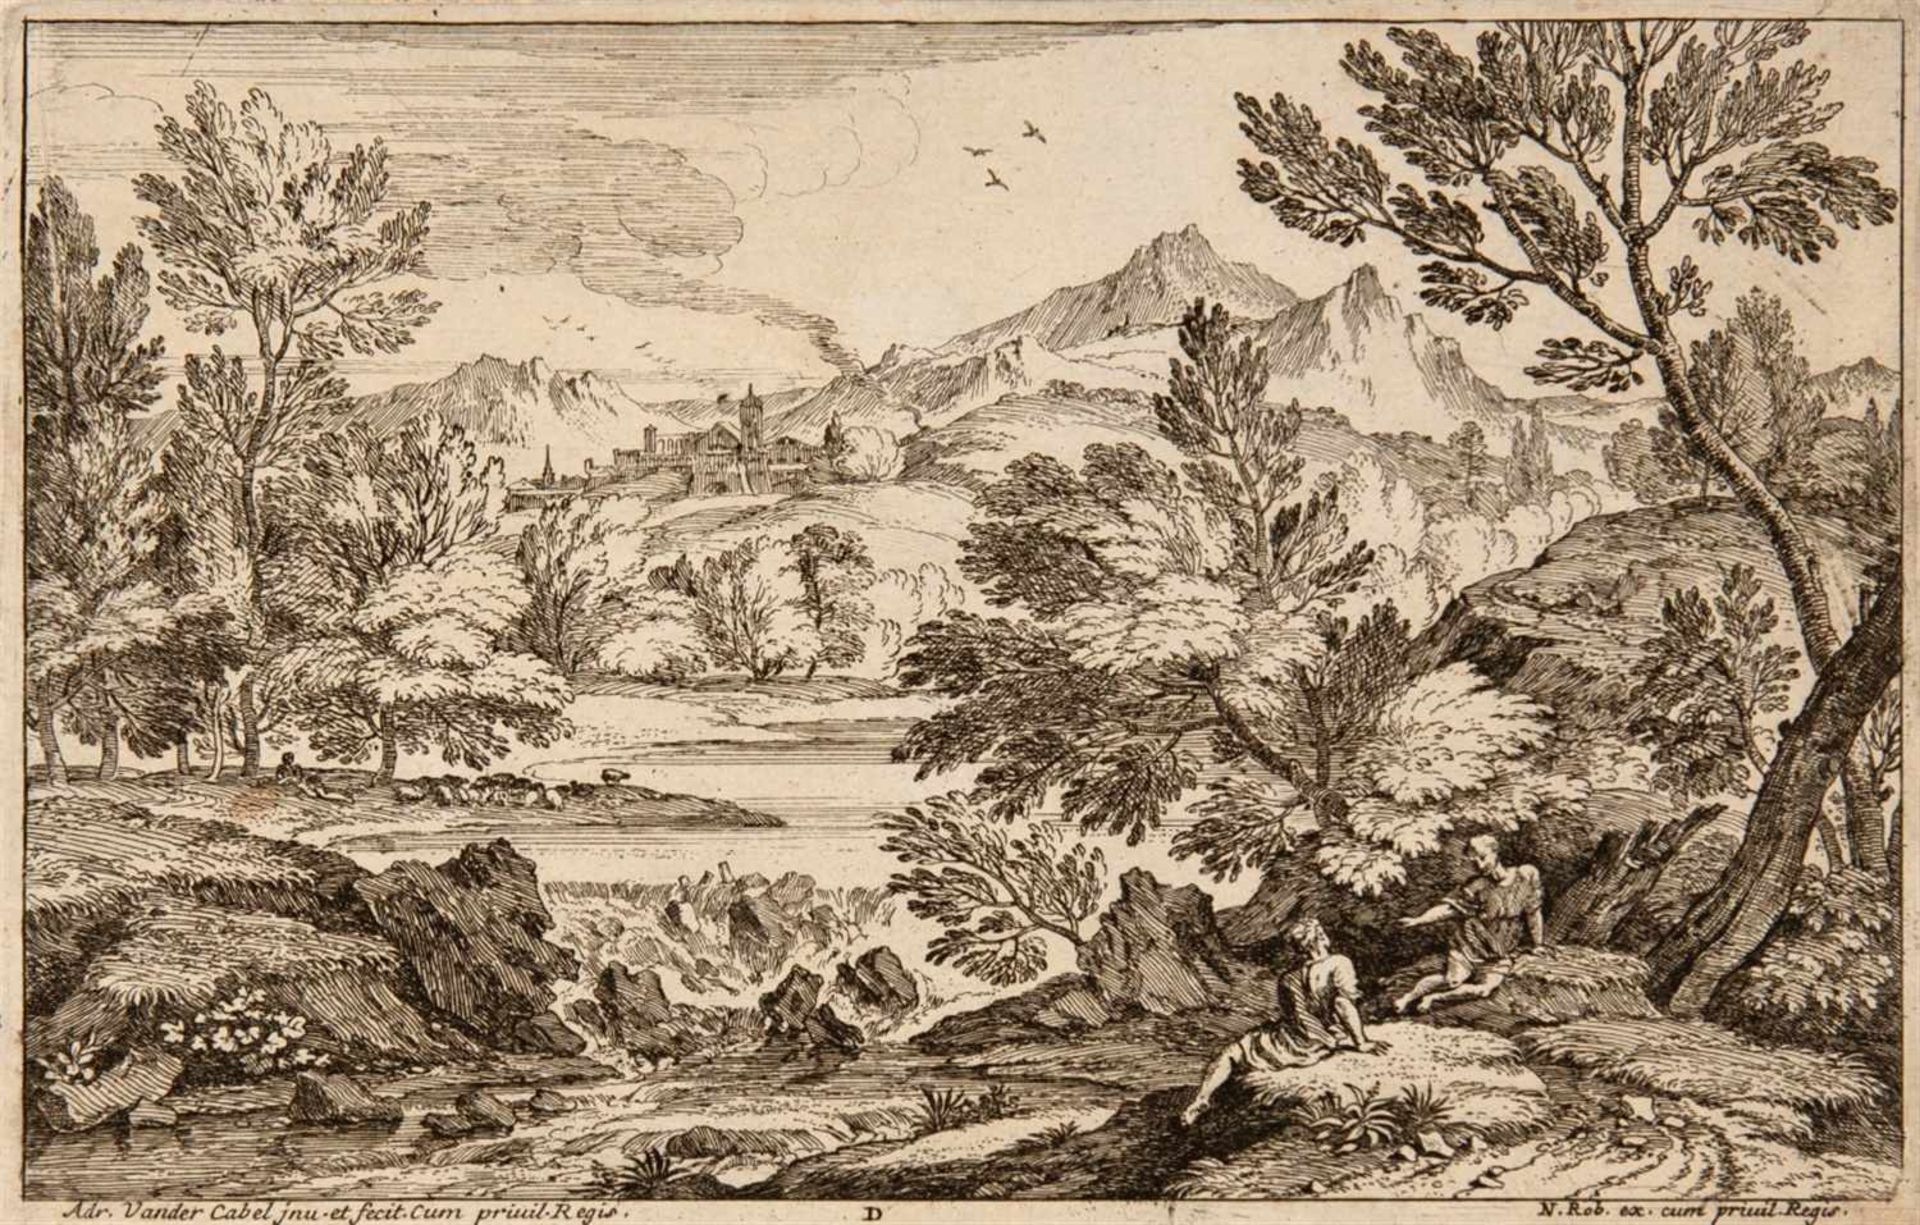 ADRIAN VAN DER CABELRyswyk 1631 - 1705 Lyon Segonds Livre de Paisages du Sr. Vendrecable. Folge - Image 4 of 6